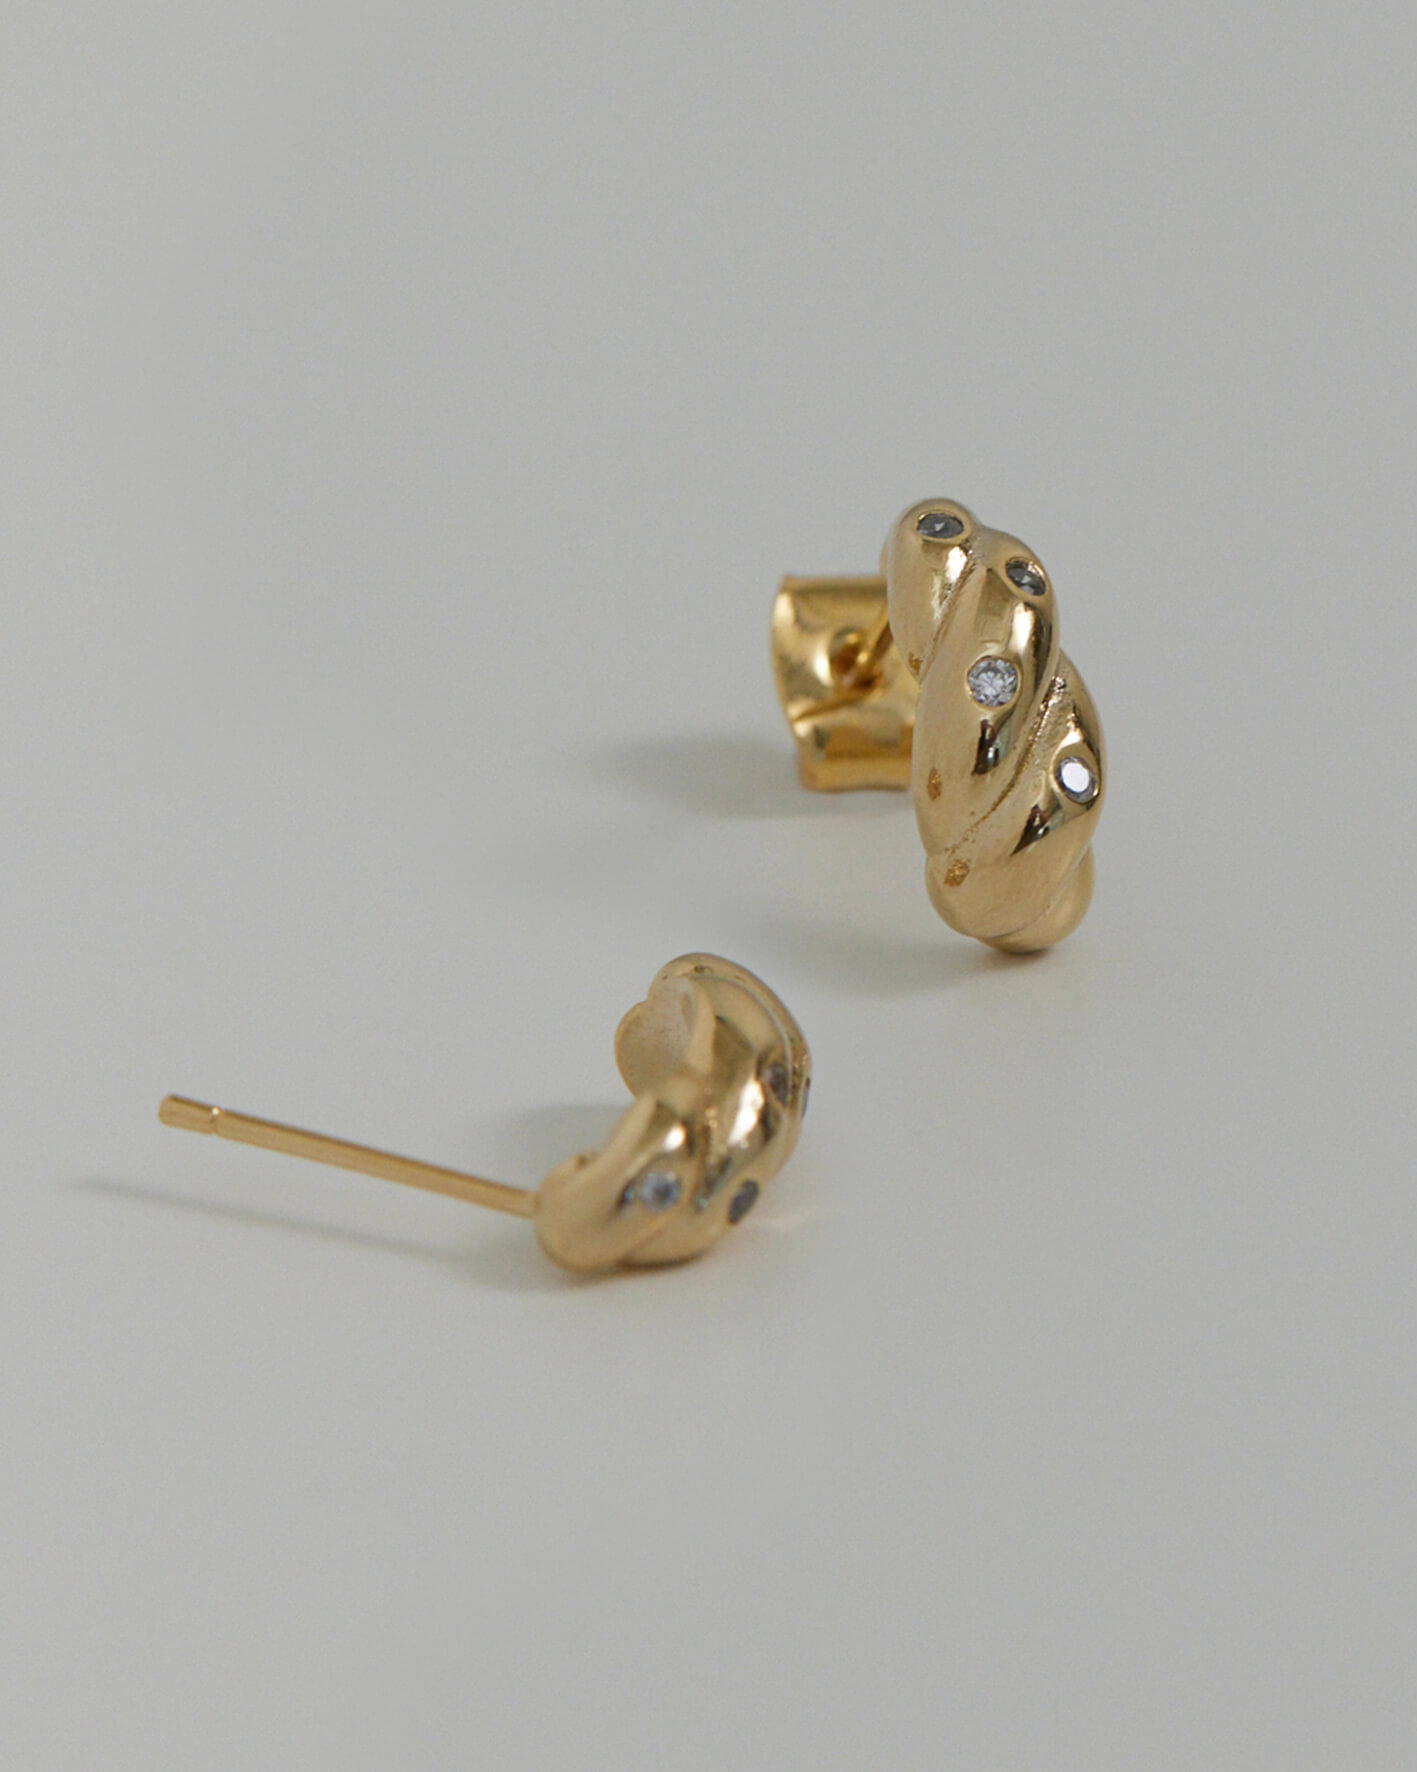 Eco安珂,韓國飾品,韓國耳環,耳針式耳環,貼耳耳環,氣質耳環,鑽耳環